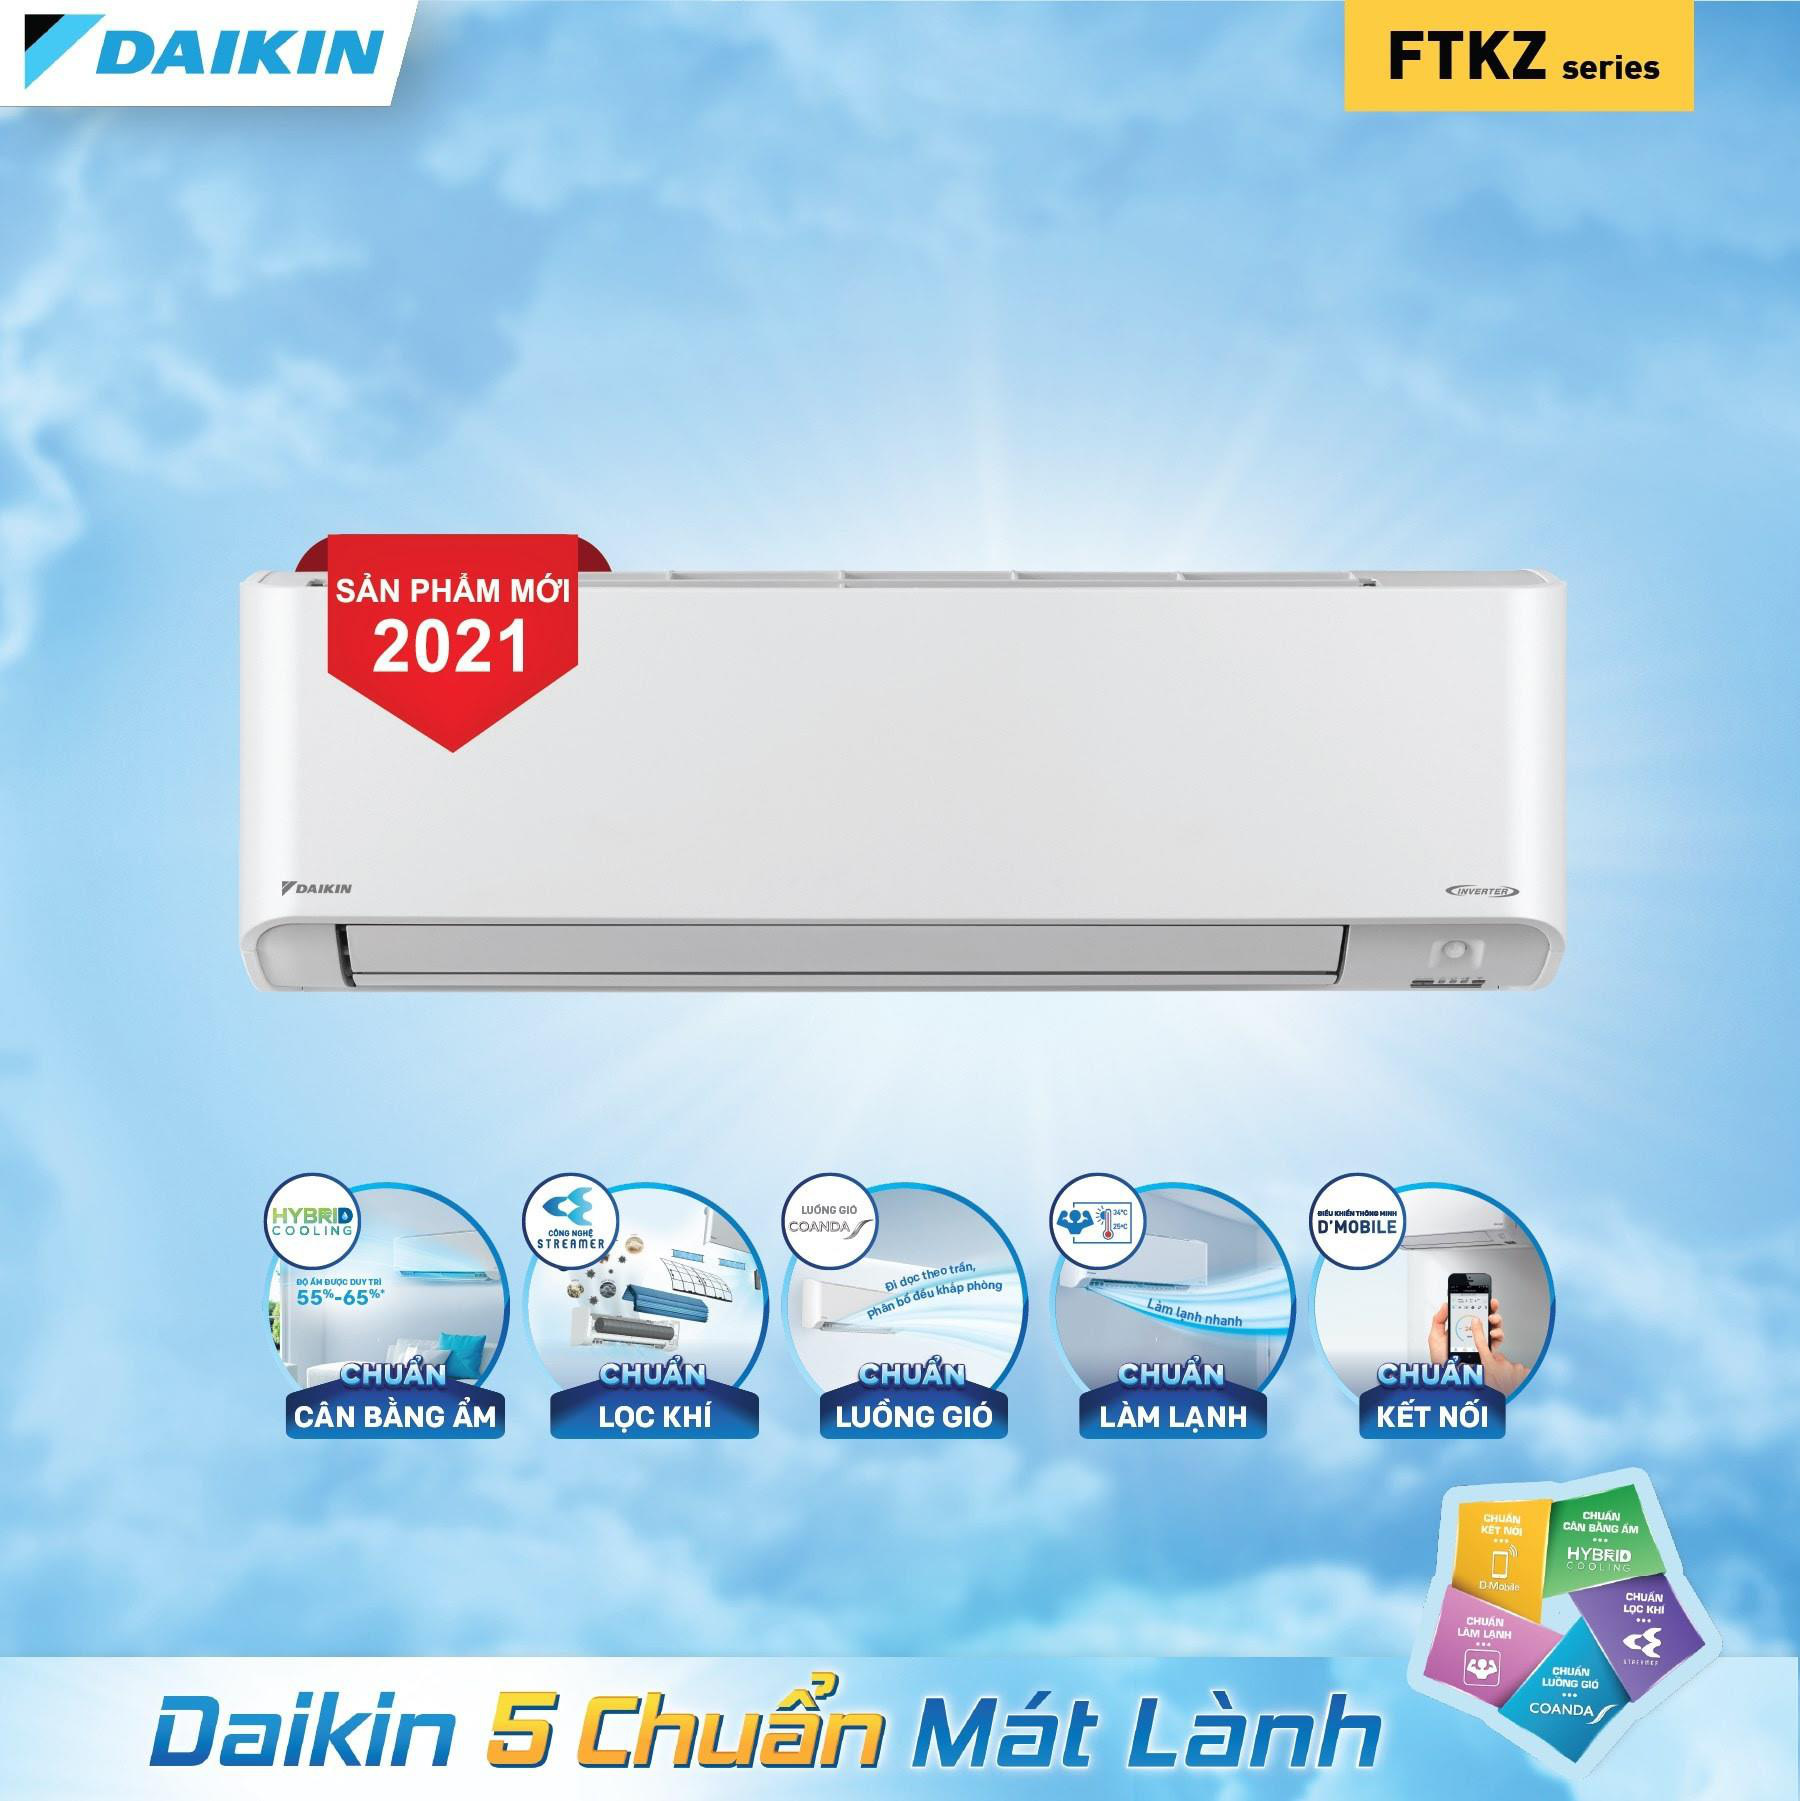 Daikin được giới công nghệ Việt Nam bầu chọn là Hãng điều hoà yêu thích nhất - Ảnh 1.